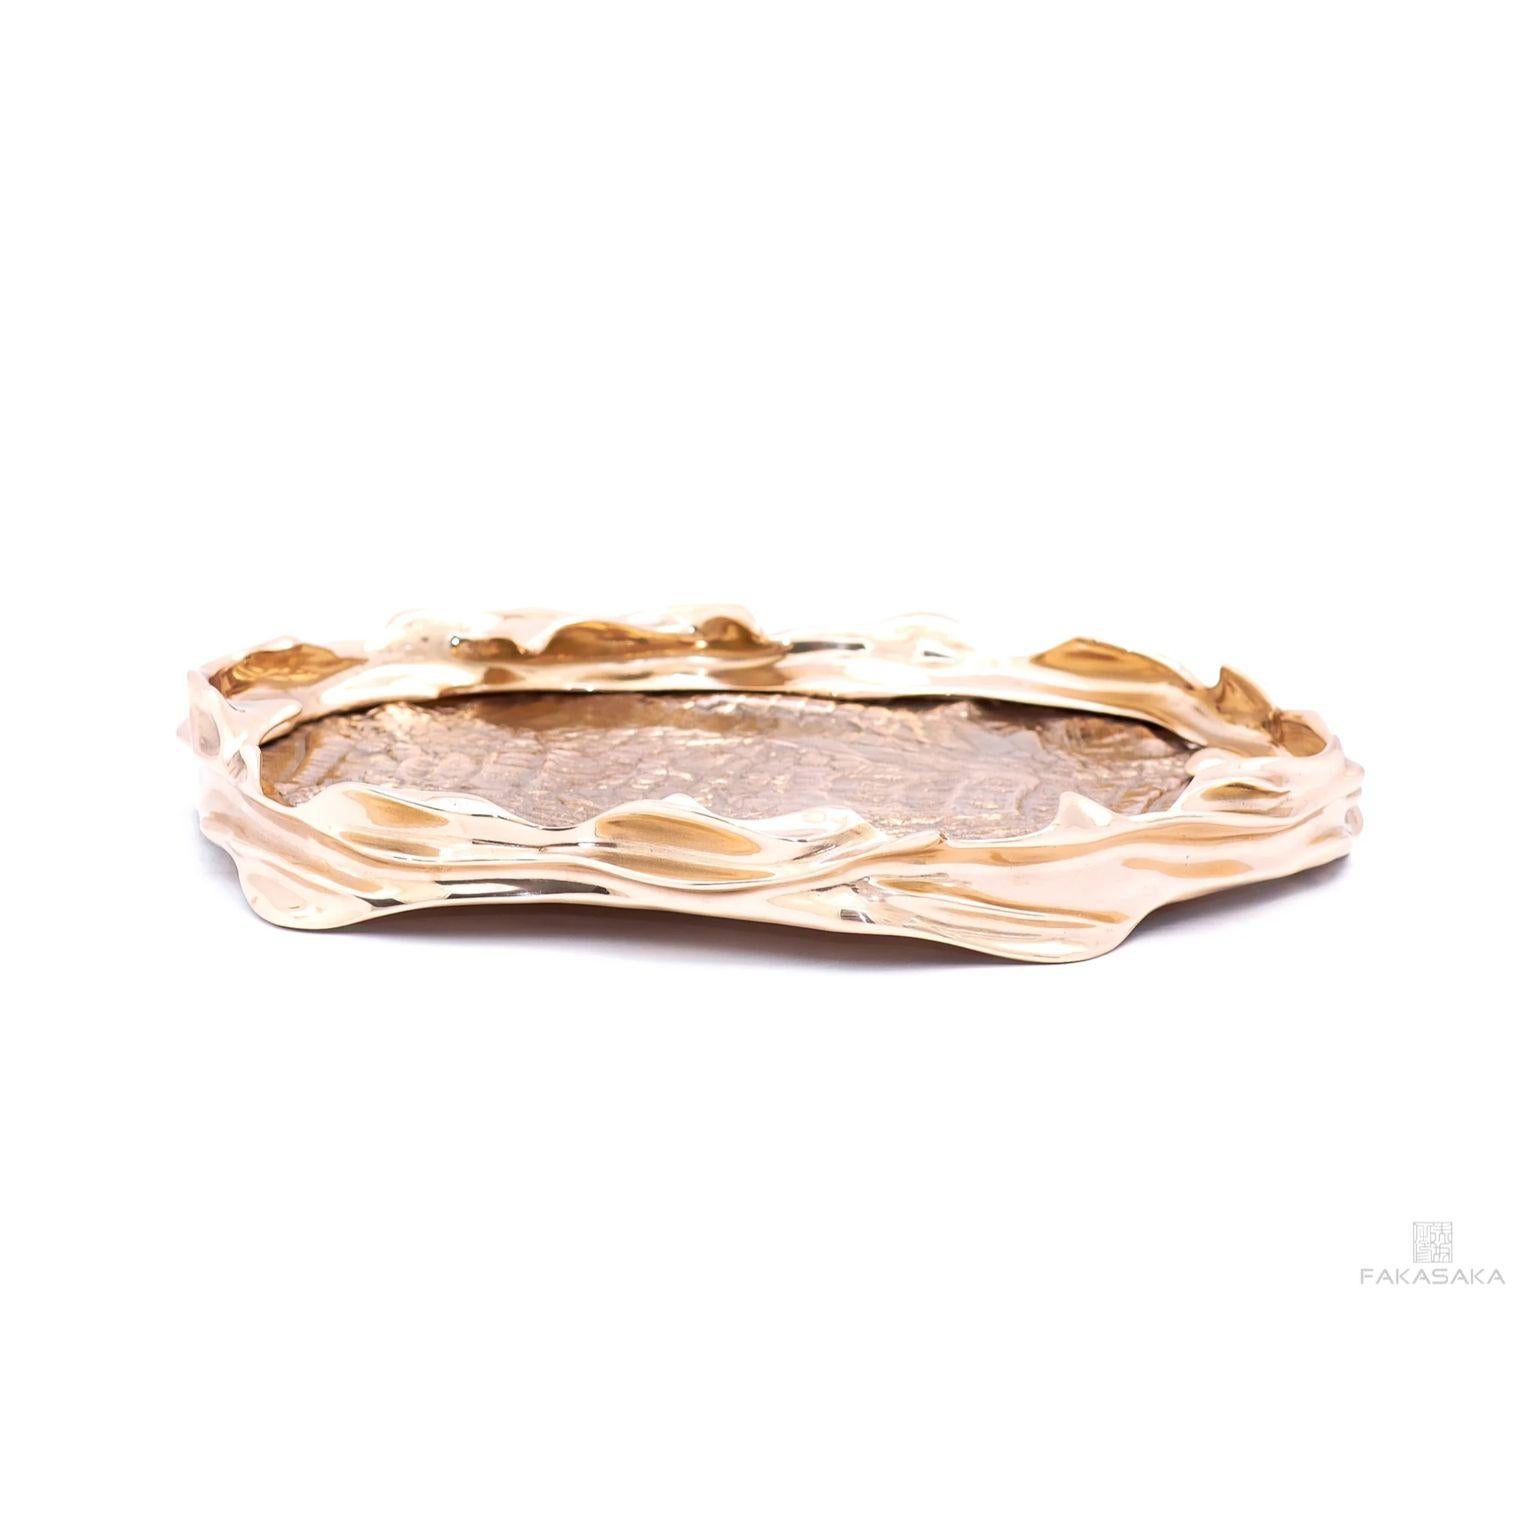 Schale Dear Celia von Fakasaka Design.
Abmessungen: B 36 cm T 30 cm H 7 cm.
MATERIAL: polierte Bronze.

 FAKASAKA ist ein Designunternehmen, das sich auf die Herstellung von hochwertigen Möbeln, Leuchten, Dekorationsobjekten, Juwelen und